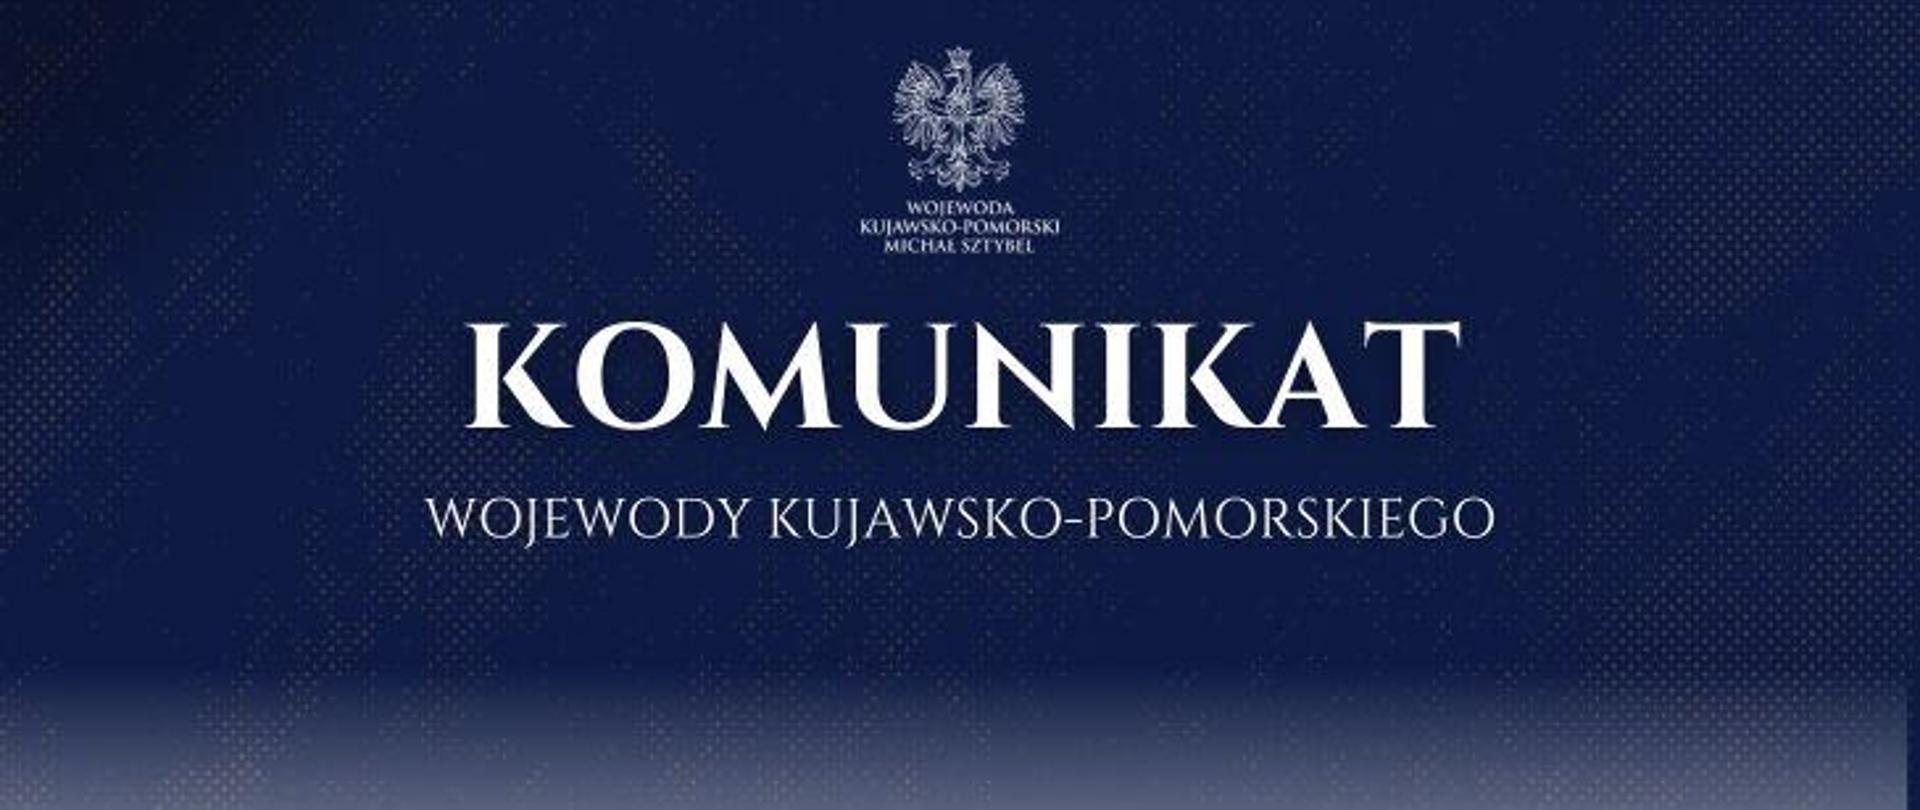 Komunikat Wojewody Kujawsko-Pomorskiego dotyczący Kujawsko-Pomorskiego Wojewódzkiego Konserwatora Zabytków
